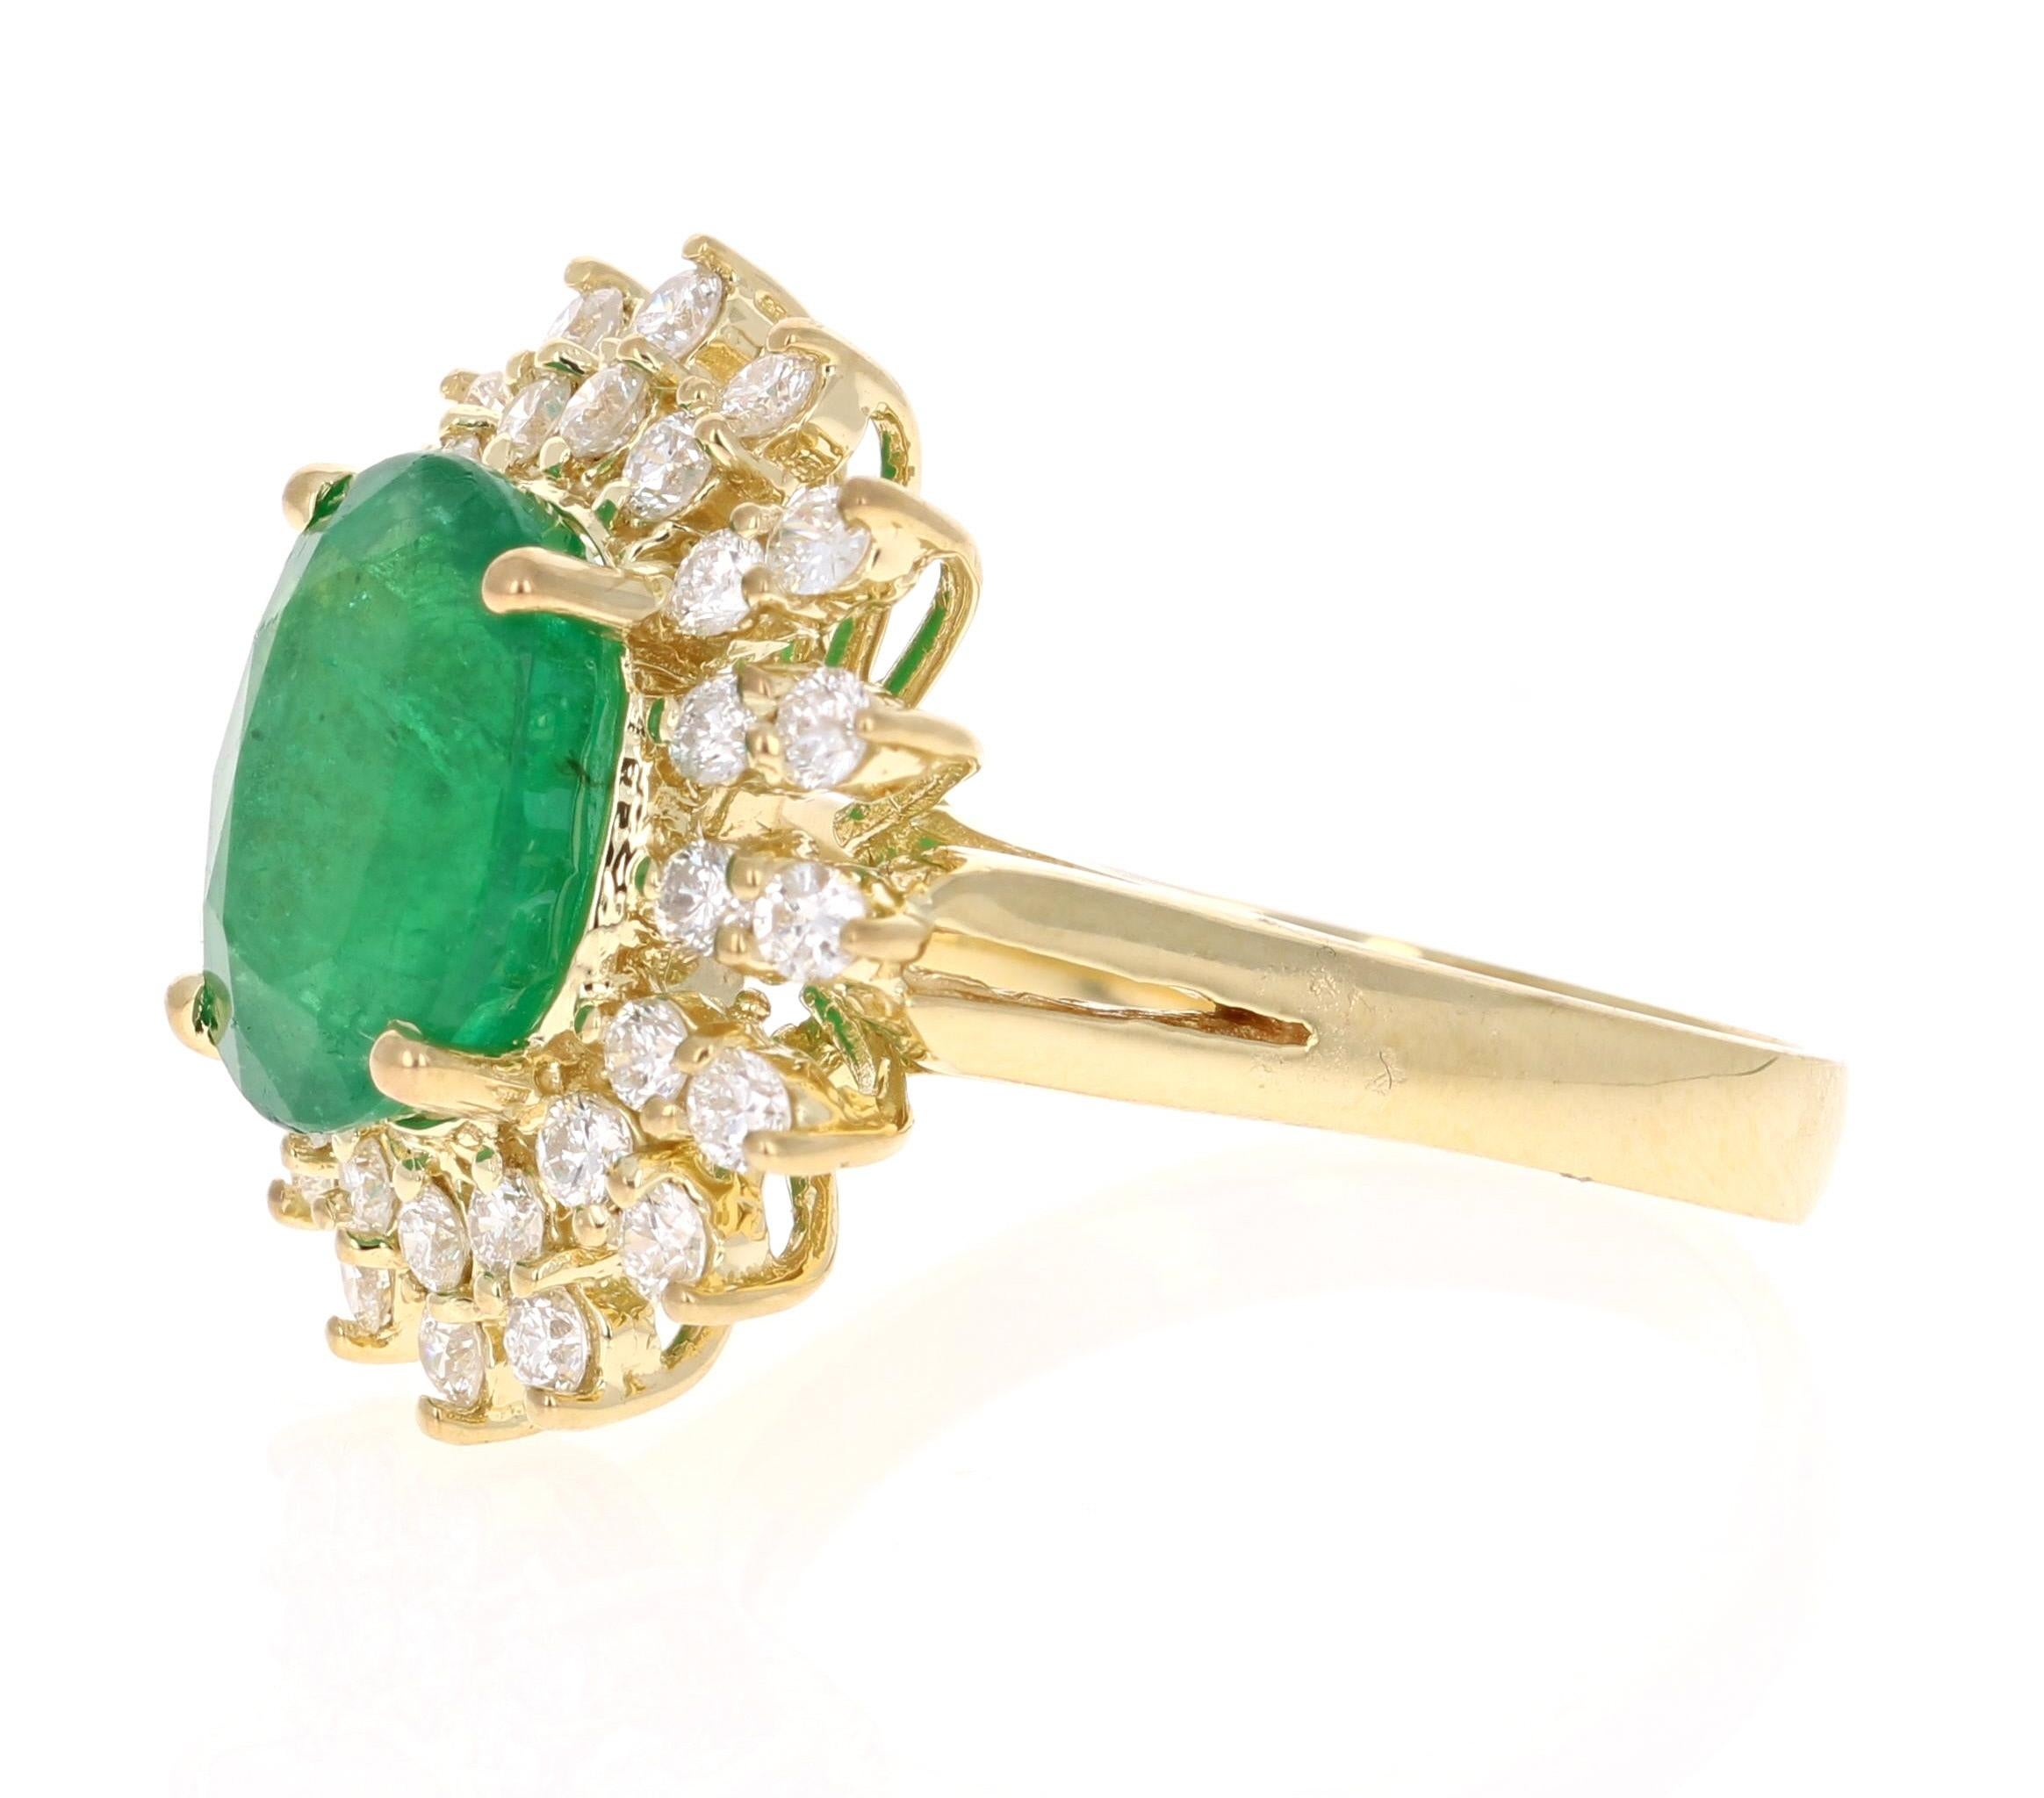 Contemporary 5.18 Carat Emerald Diamond 18 Karat Yellow Gold Cocktail Ring